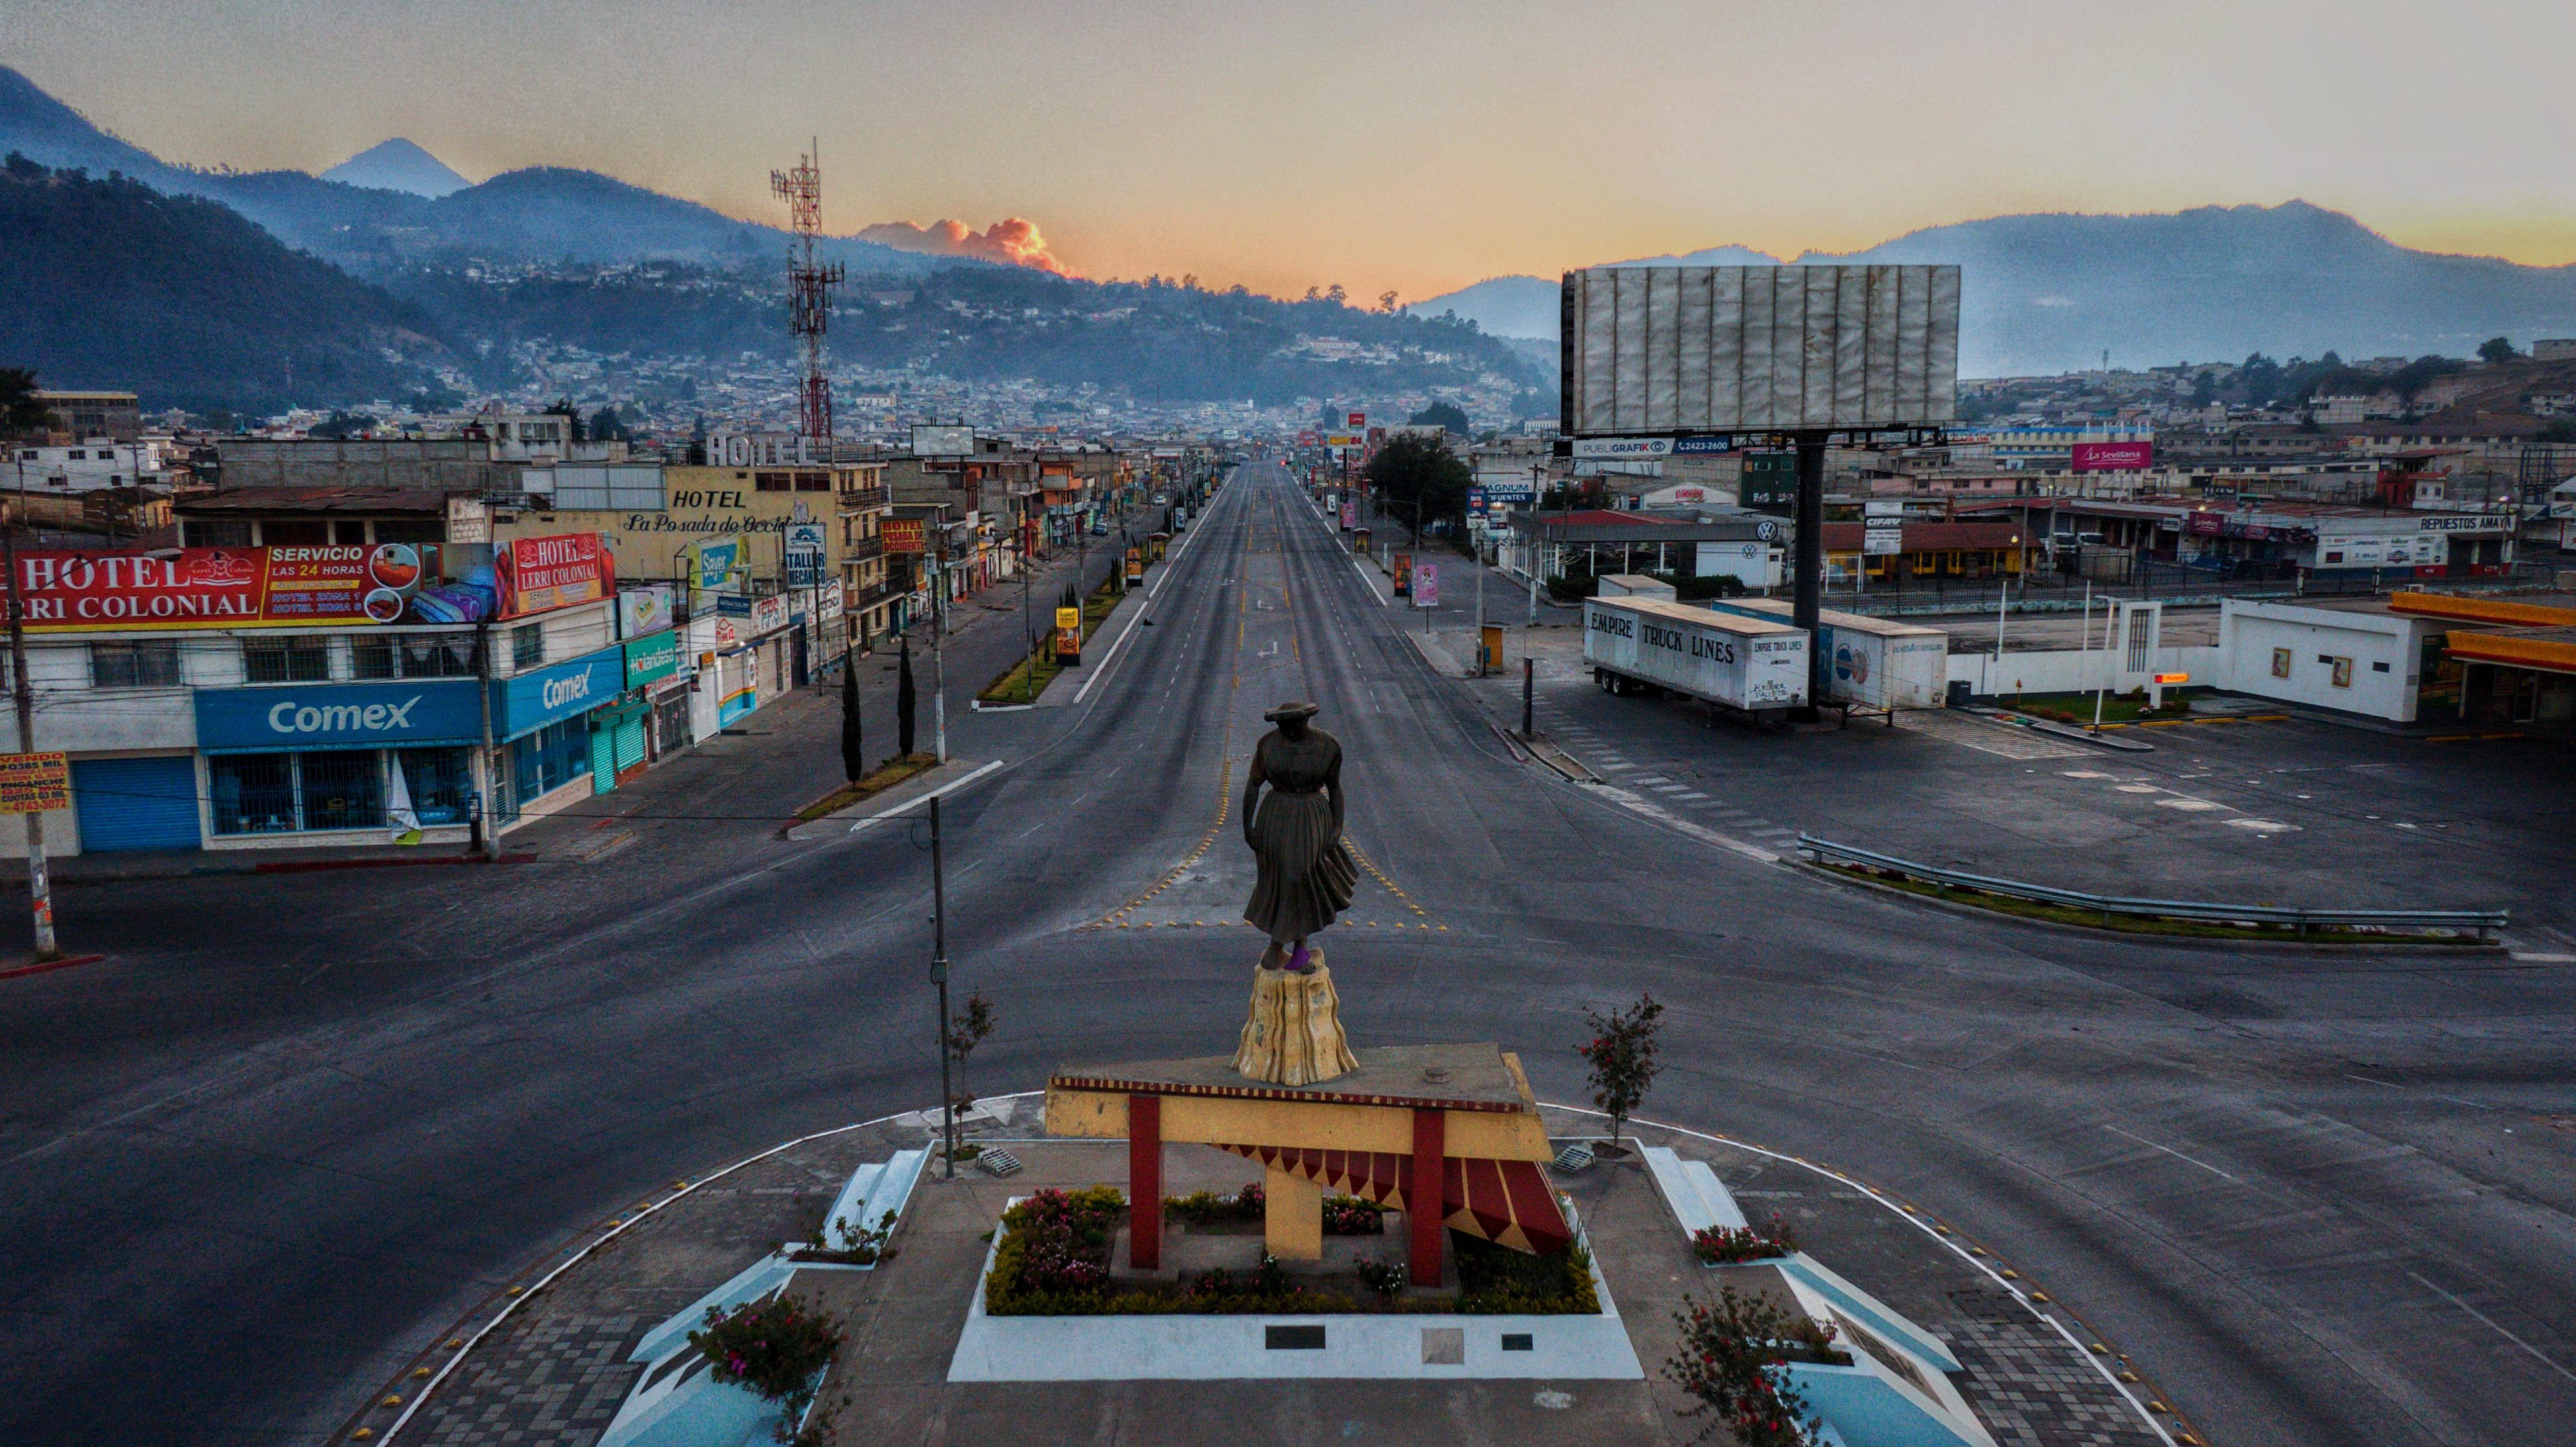 La ciudad de Quetzaltenango es una de las más competitivas según el Índice de Competitividad Local (ICL). (Foto Prensa Libre: Hemeroteca)